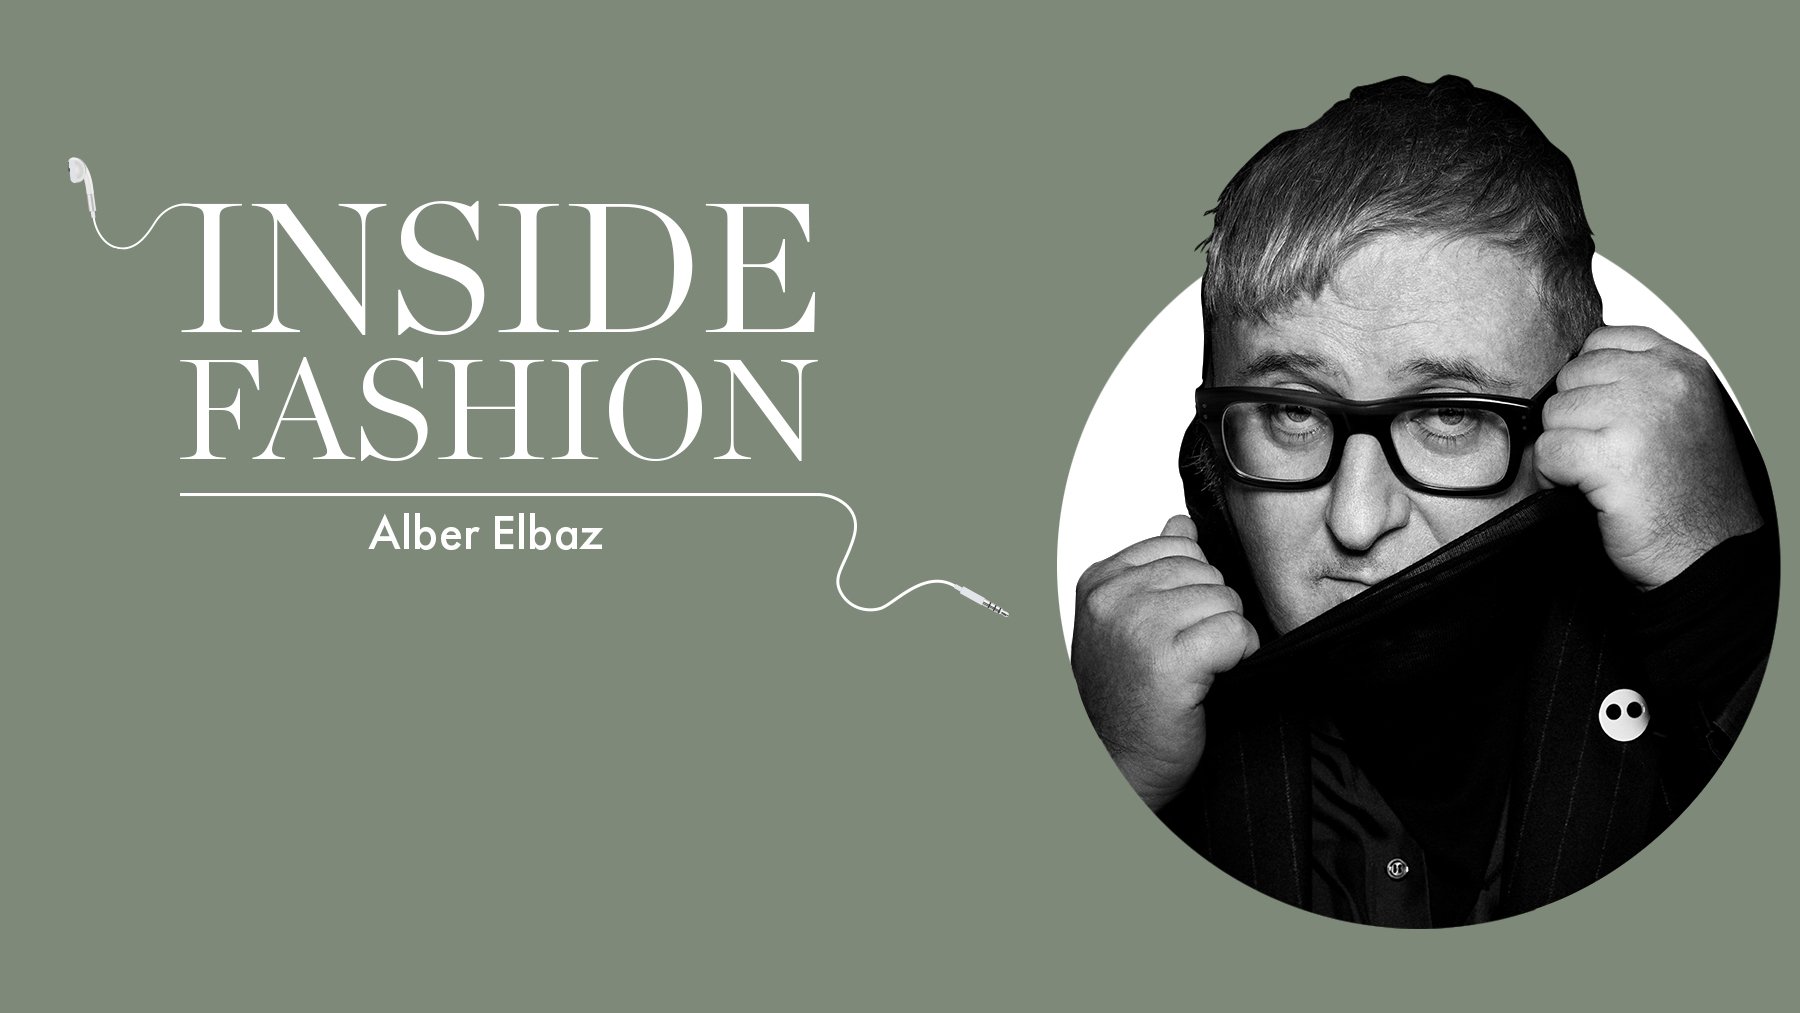 Alber Elbaz, Israeli fashion designer, dead at 59 of COVID-19: Reports